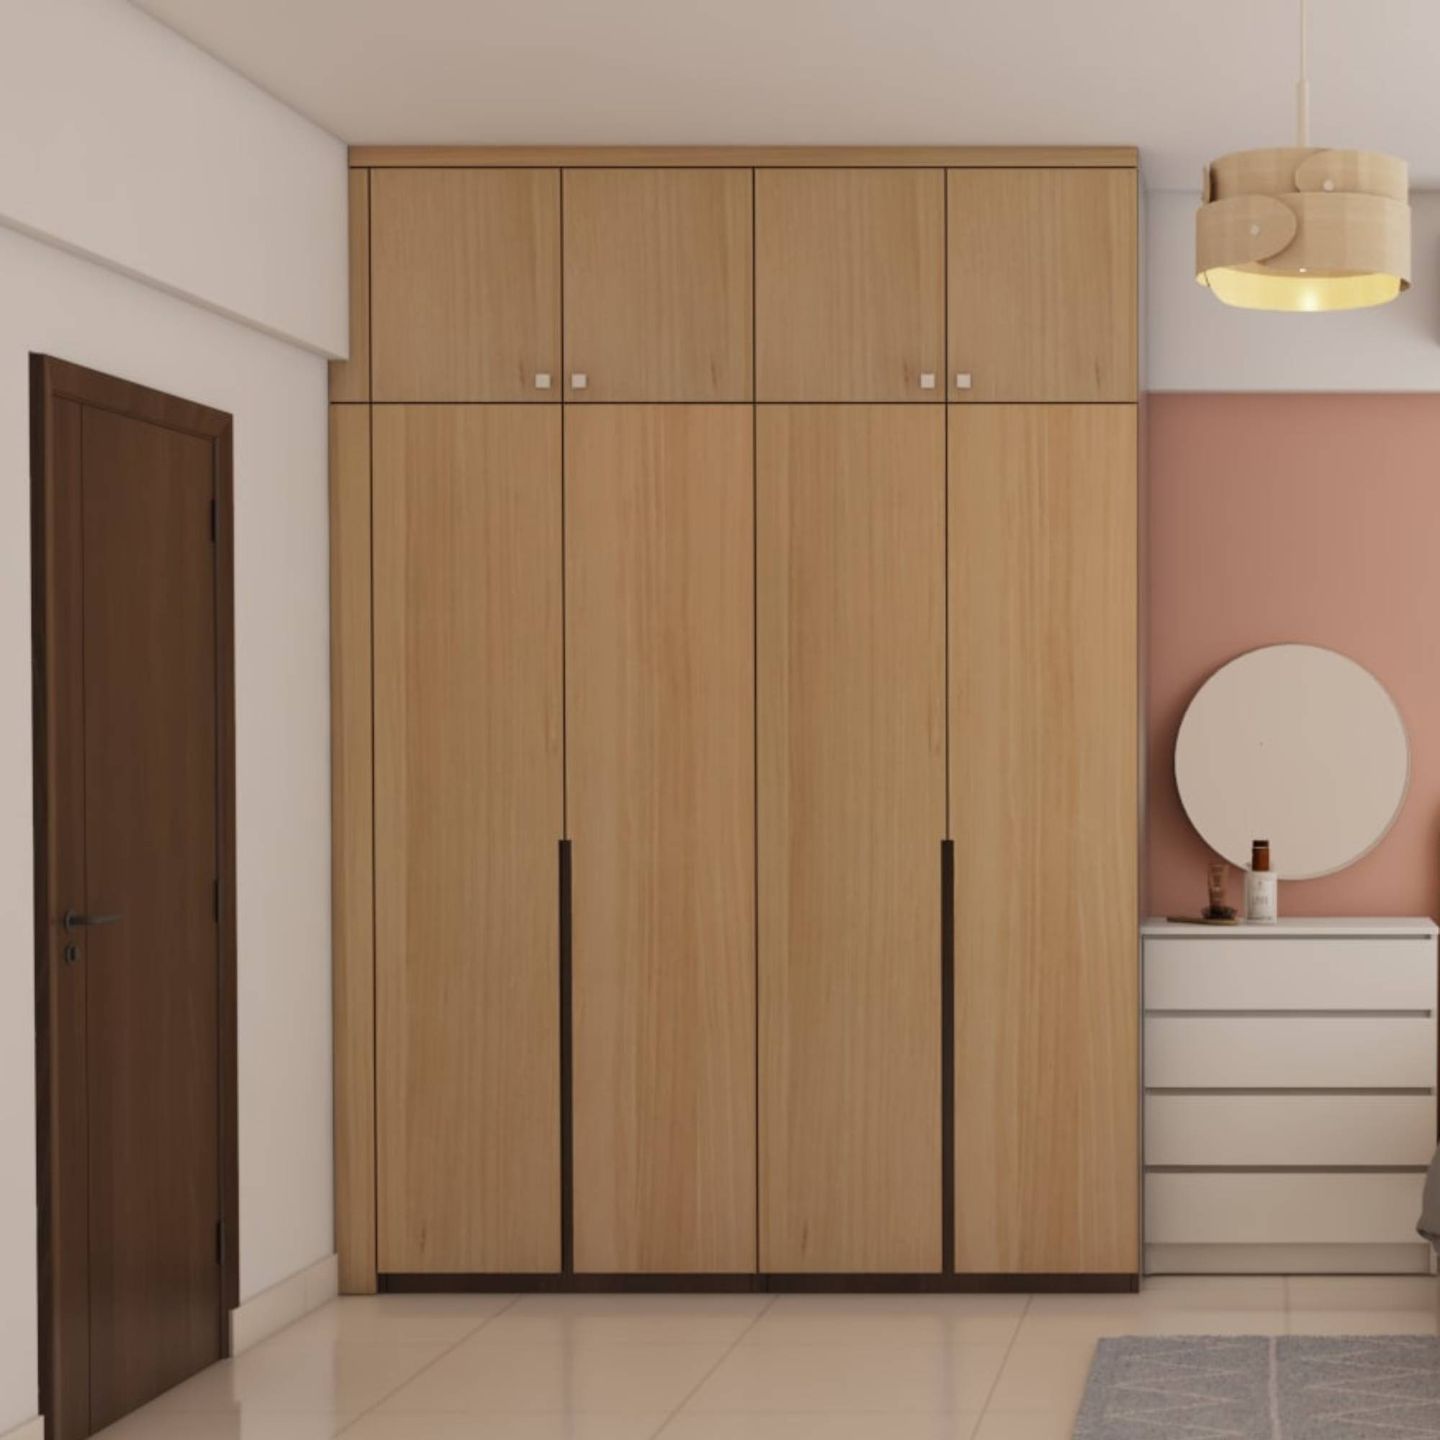 4-Door Beige Wardrobe With A Wooden Finish - Livspace